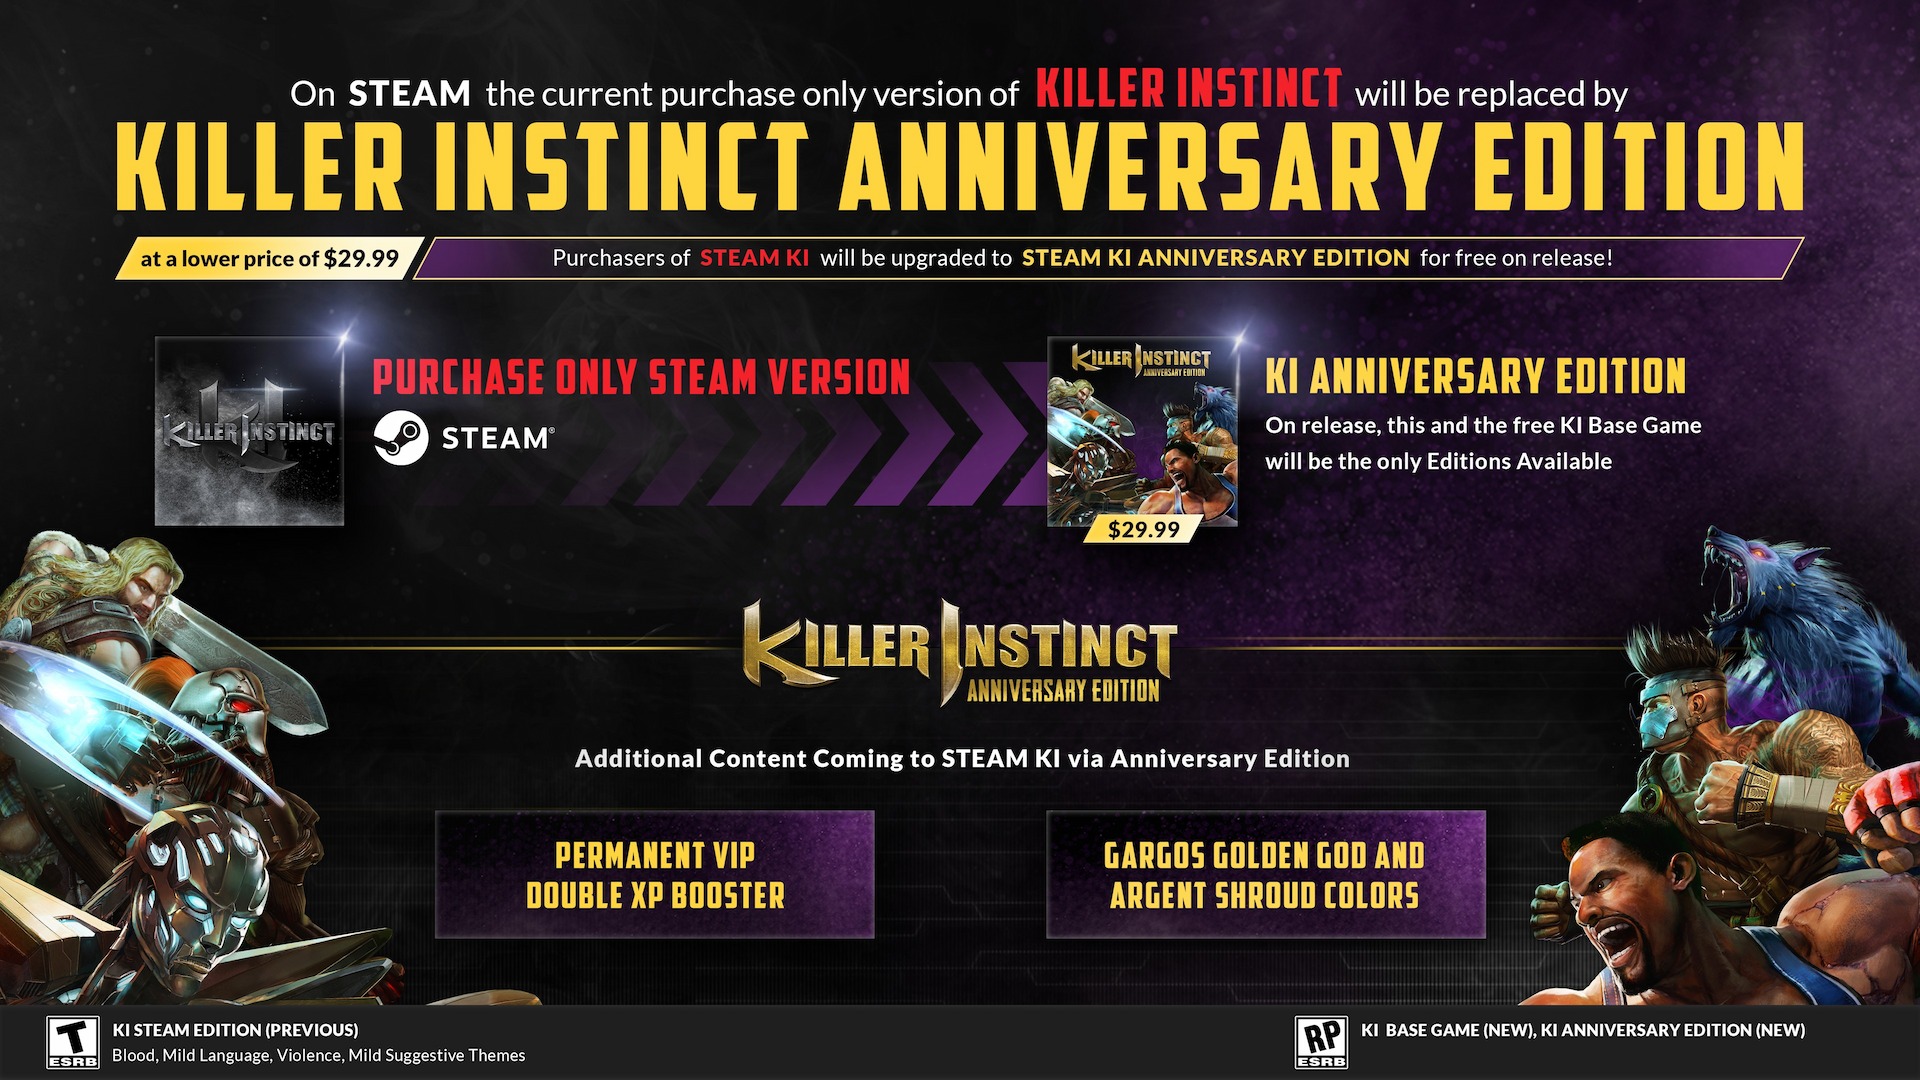 Informationsbild von Killer Instinct vom Entwickler, das Details zur Steam-Edition zeigt